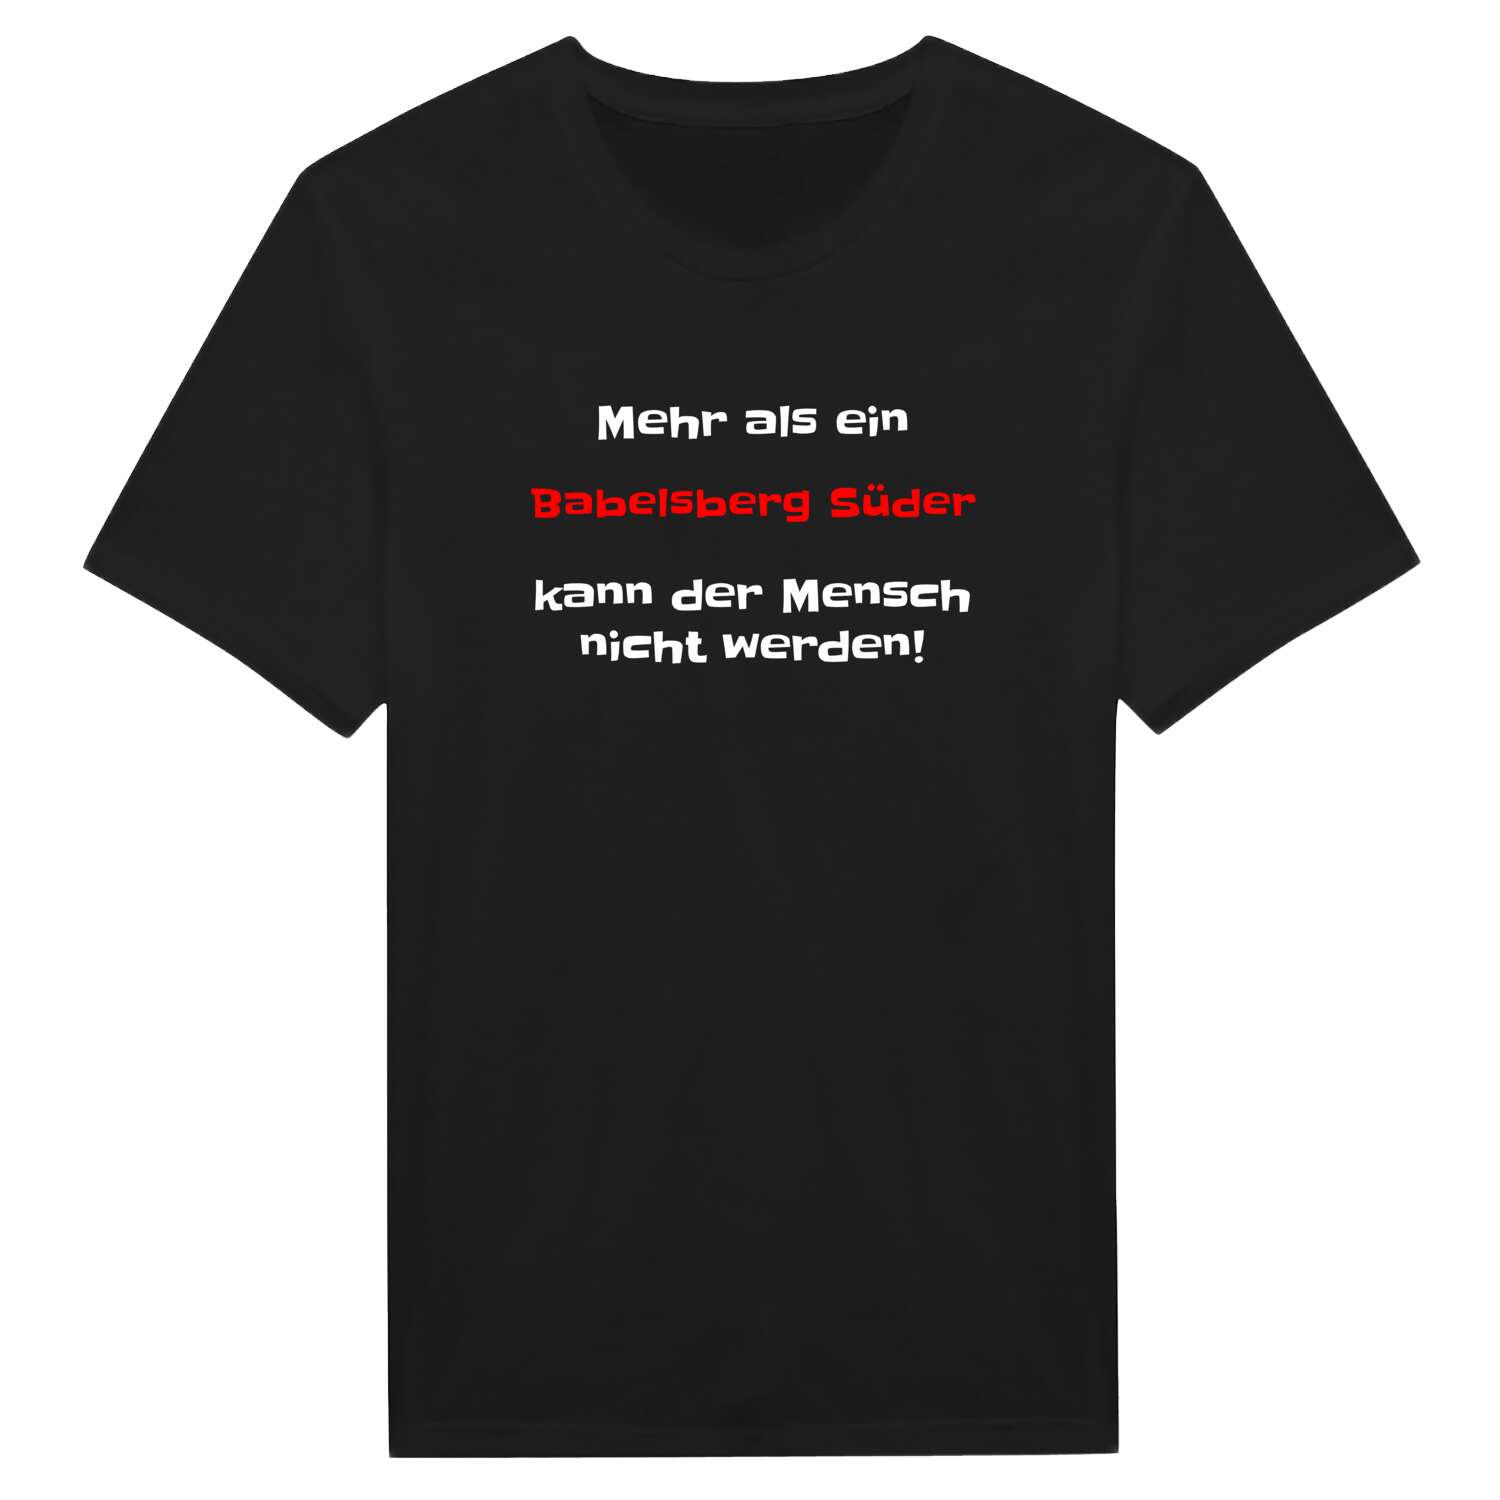 Babelsberg Süd T-Shirt »Mehr als ein«